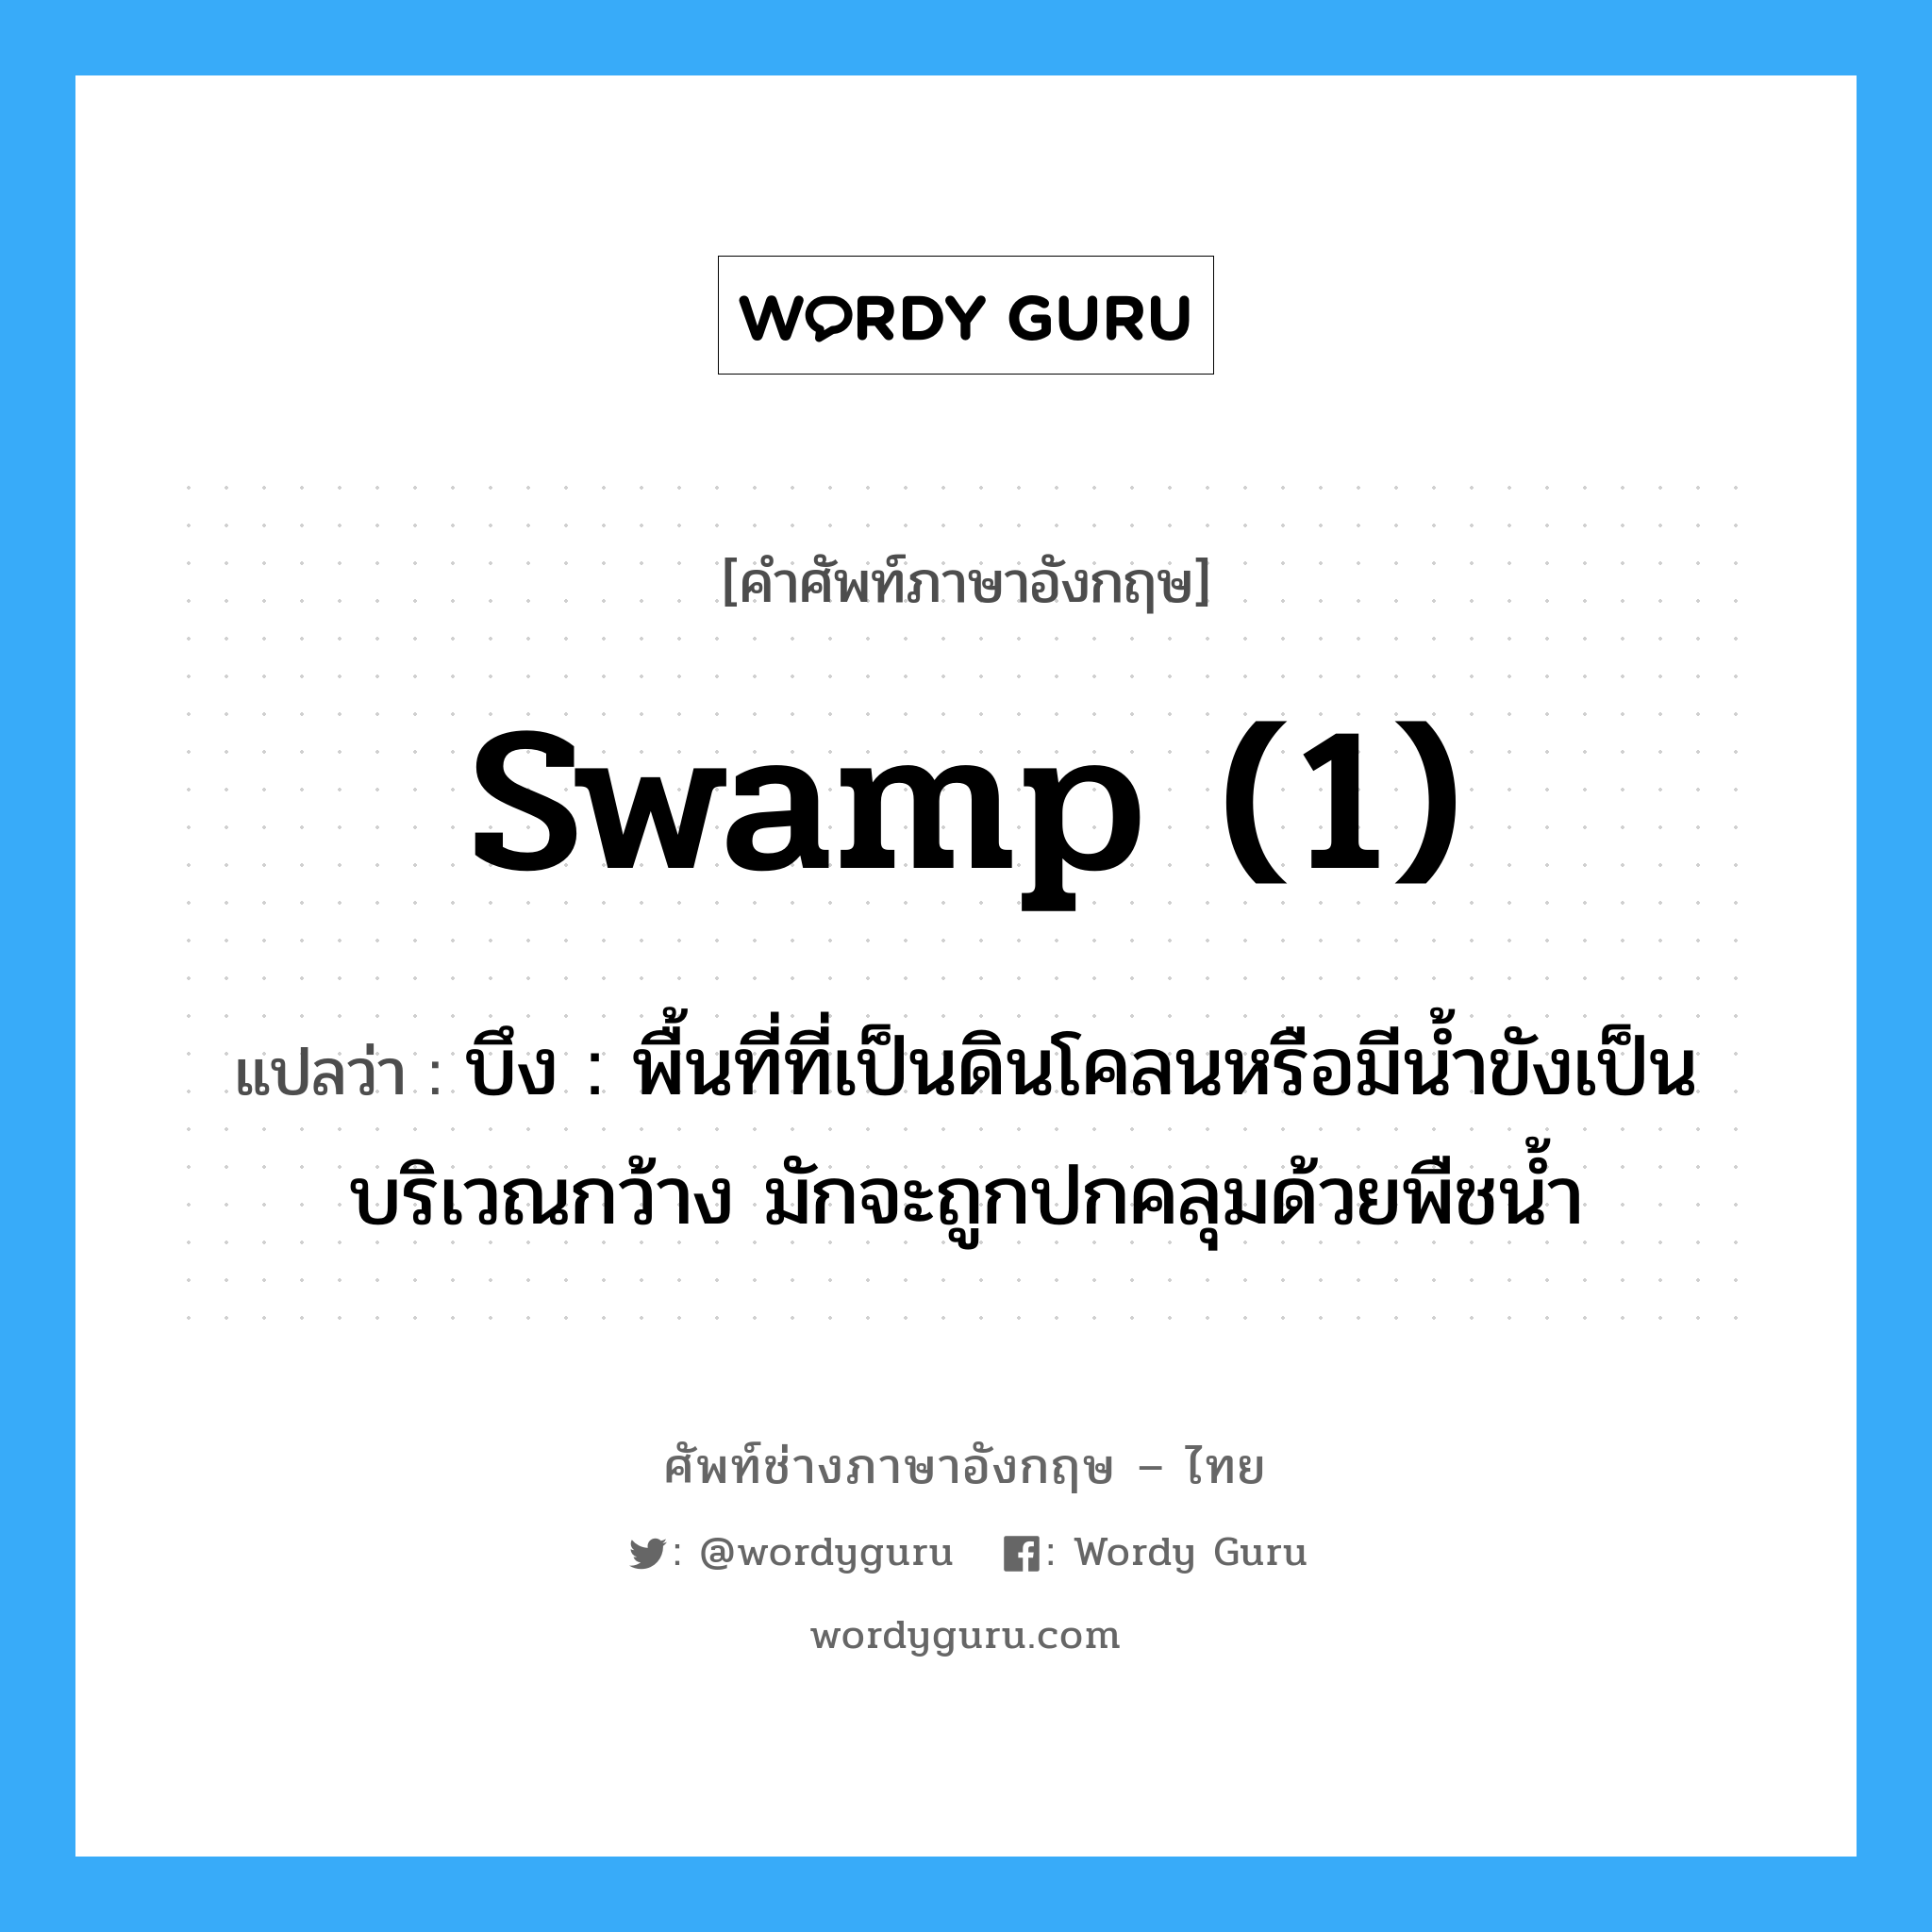 swamp (1) แปลว่า?, คำศัพท์ช่างภาษาอังกฤษ - ไทย swamp (1) คำศัพท์ภาษาอังกฤษ swamp (1) แปลว่า บึง : พื้นที่ที่เป็นดินโคลนหรือมีน้ำขังเป็นบริเวณกว้าง มักจะถูกปกคลุมด้วยพืชน้ำ